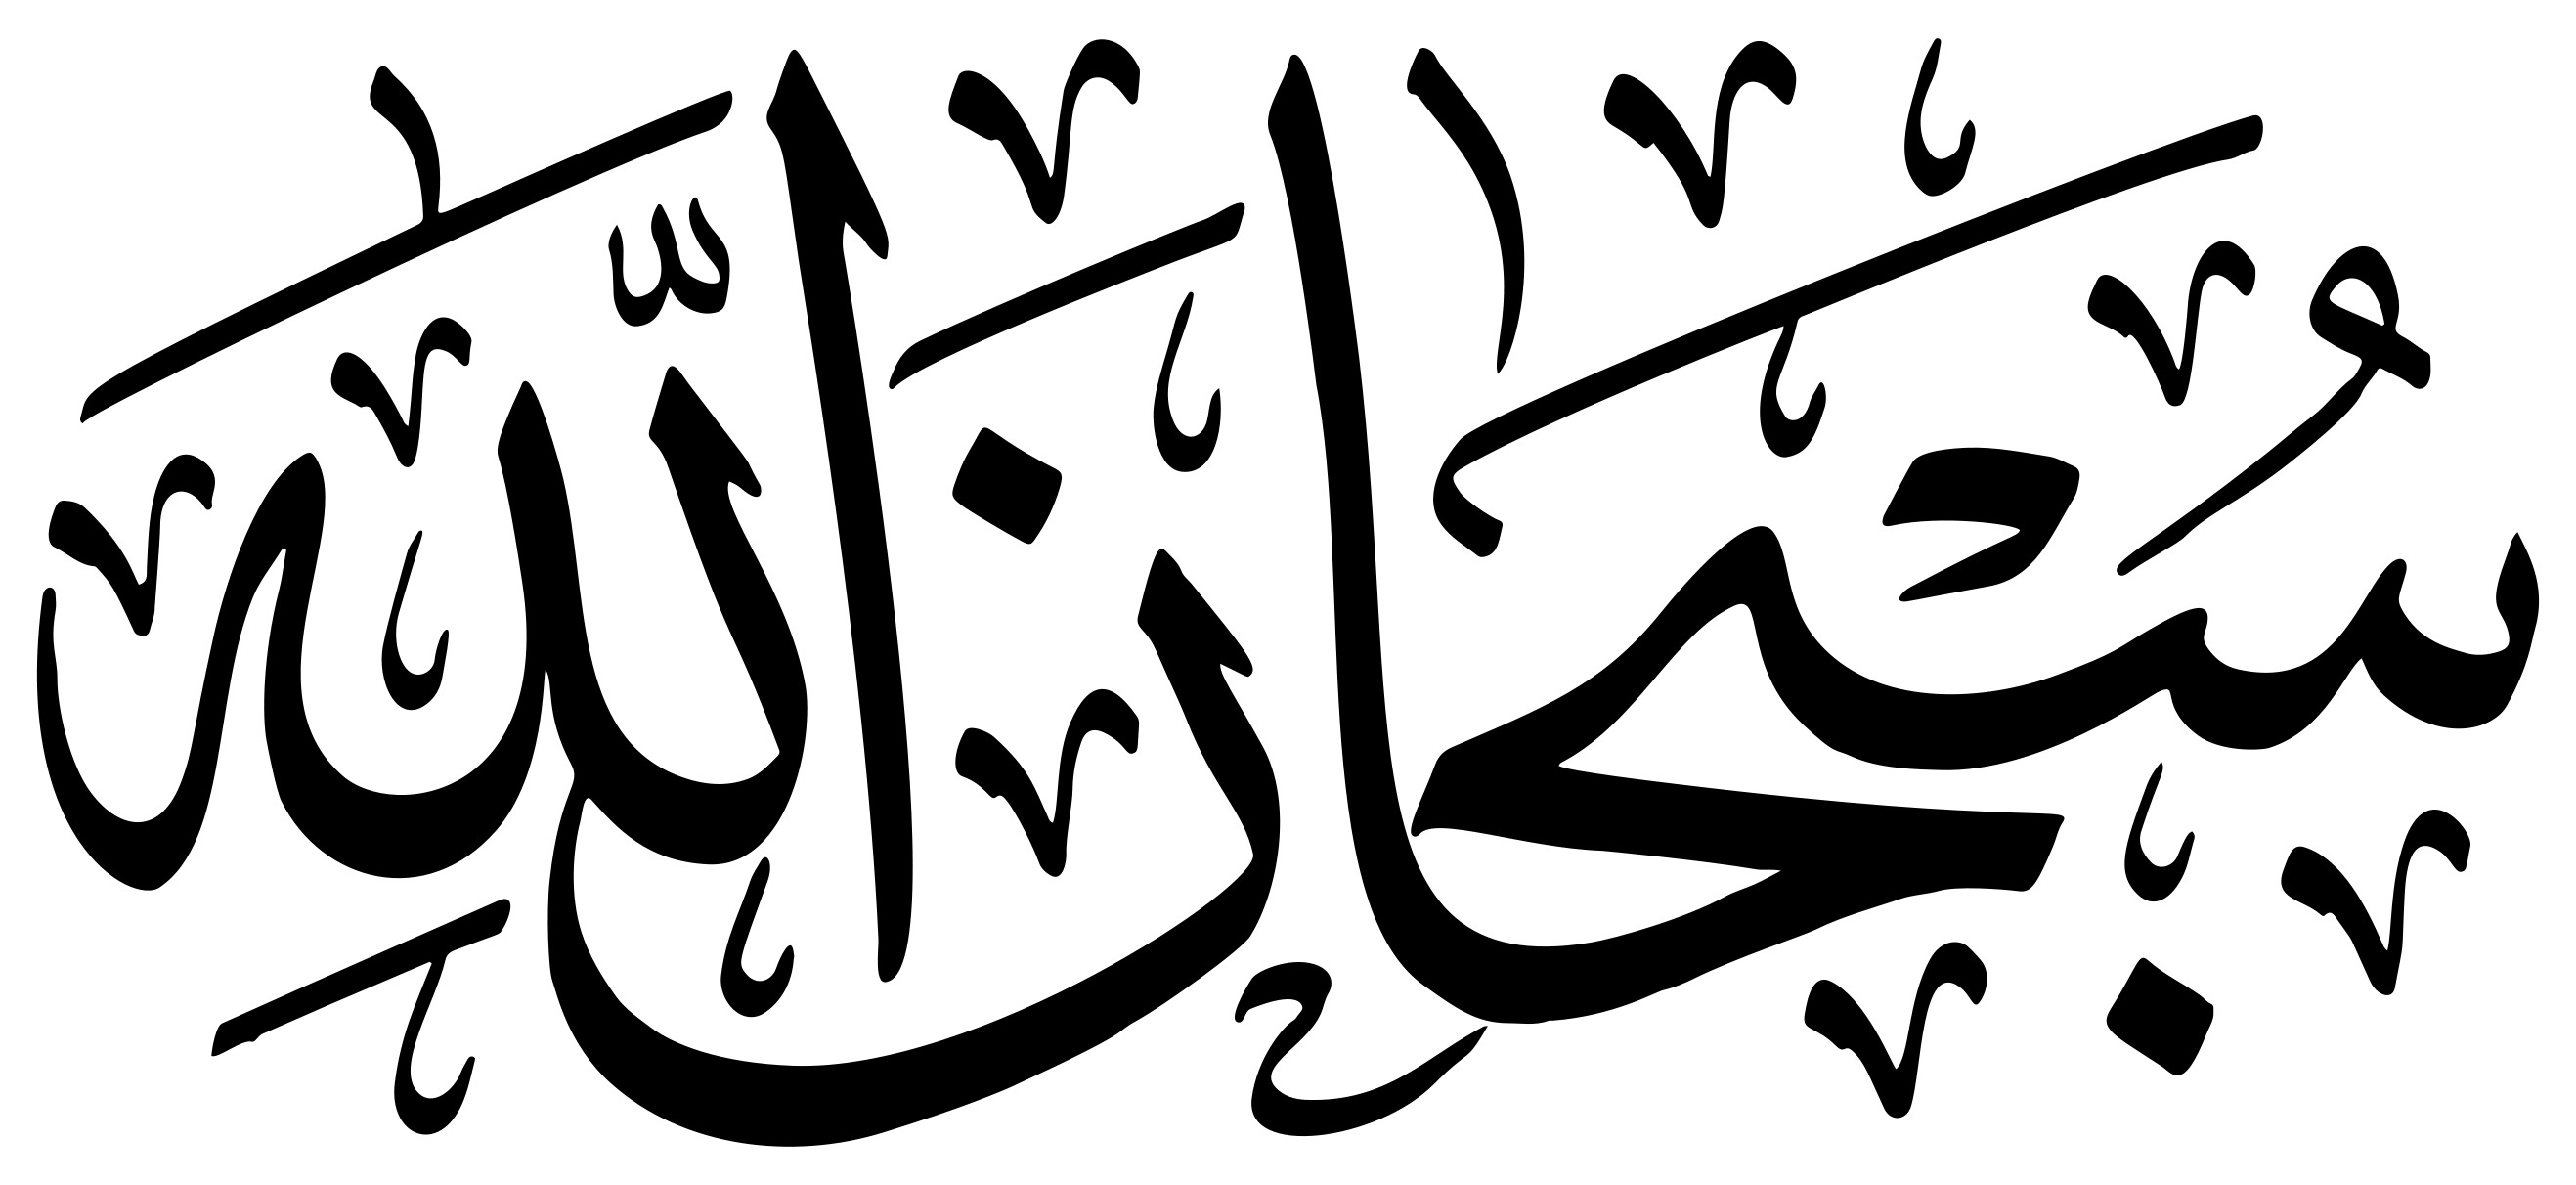 СУБХАНАЛЛАХ на арабском каллиграфия